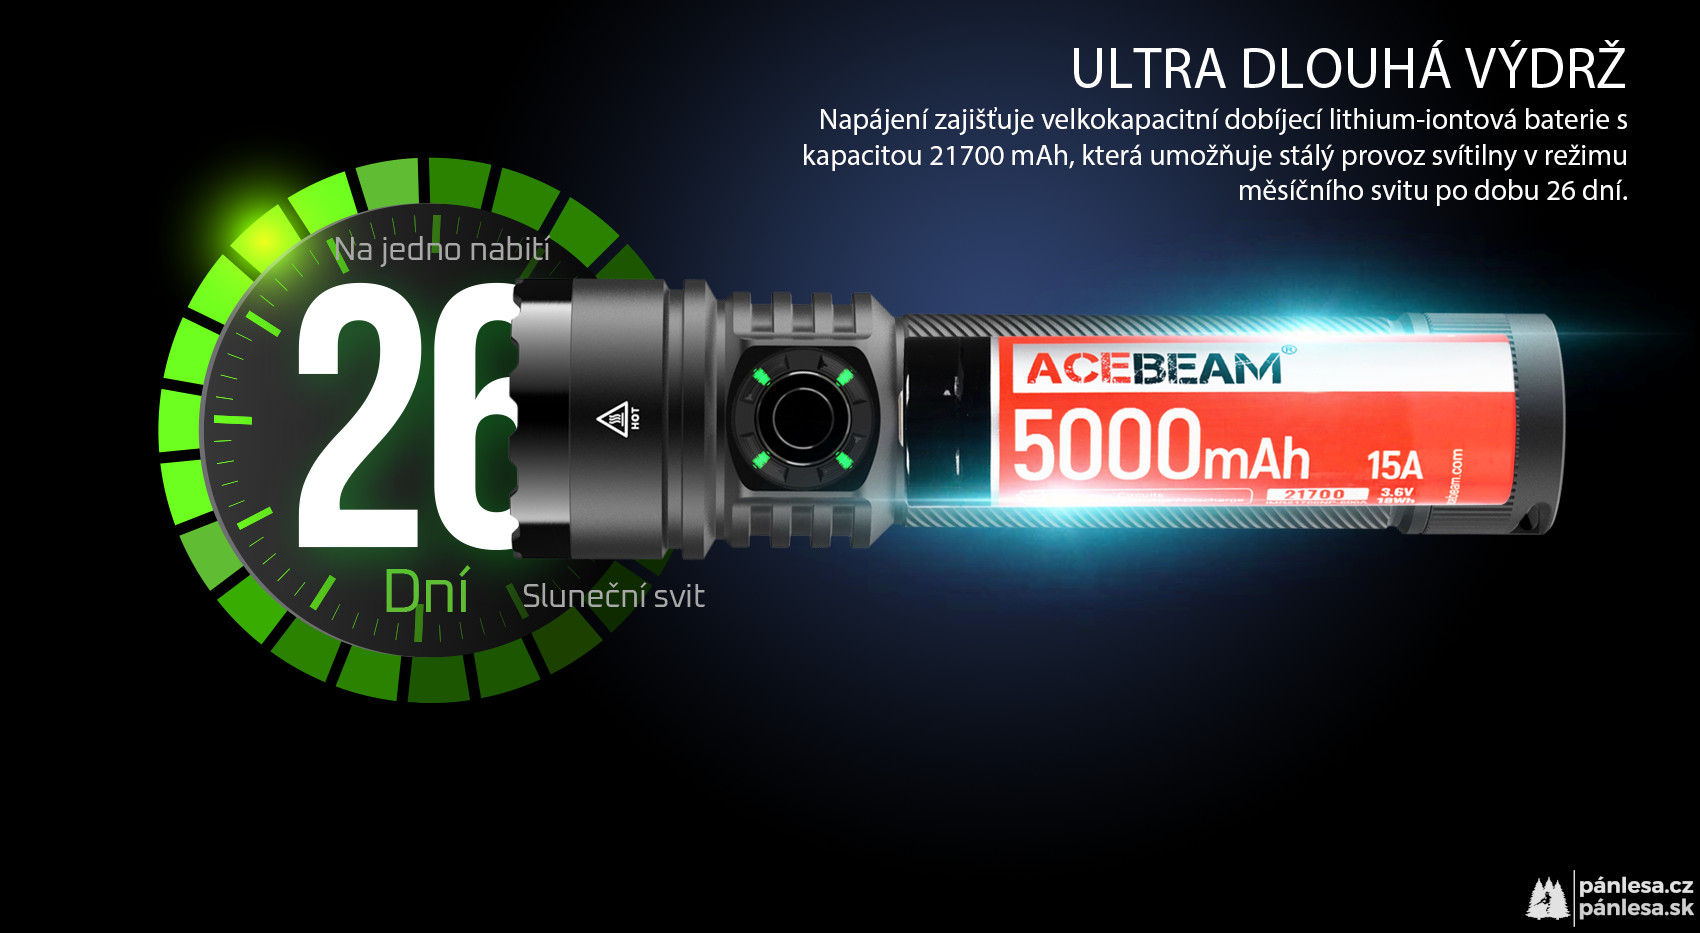 AceBeam E75, 4500 lm, black - Taktická LED svítilna, černá